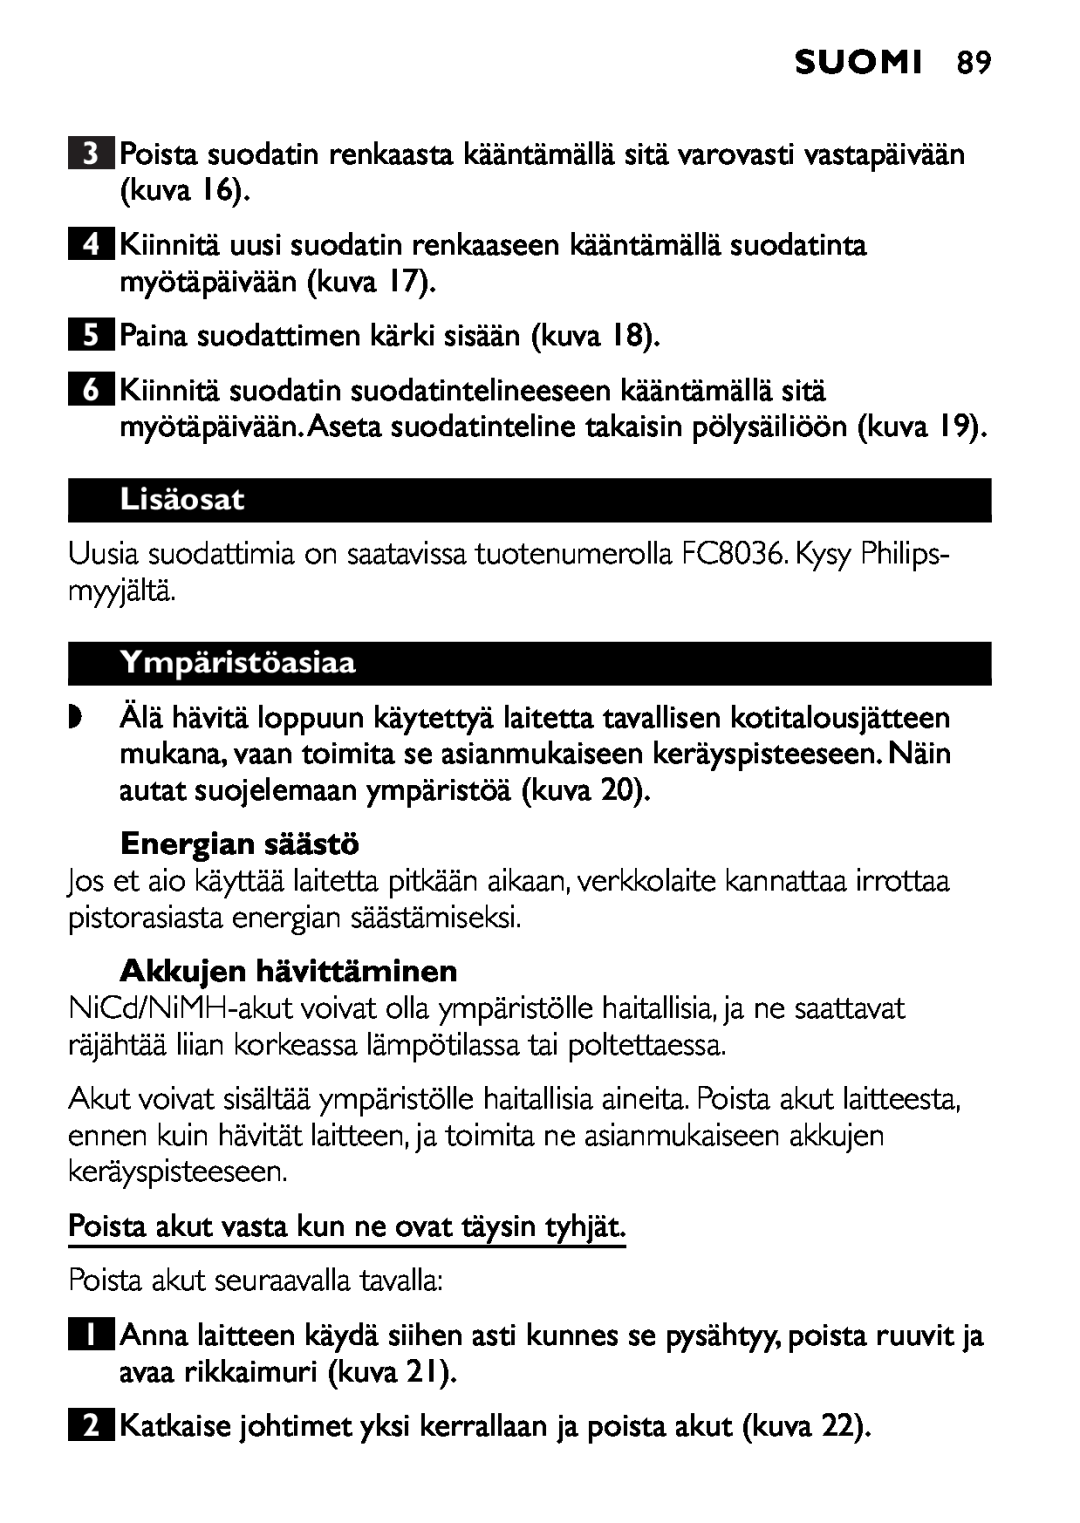 Philips FC6055 manual Lisäosat, Ympäristöasiaa, Energian säästö, Akkujen hävittäminen, Suomi 